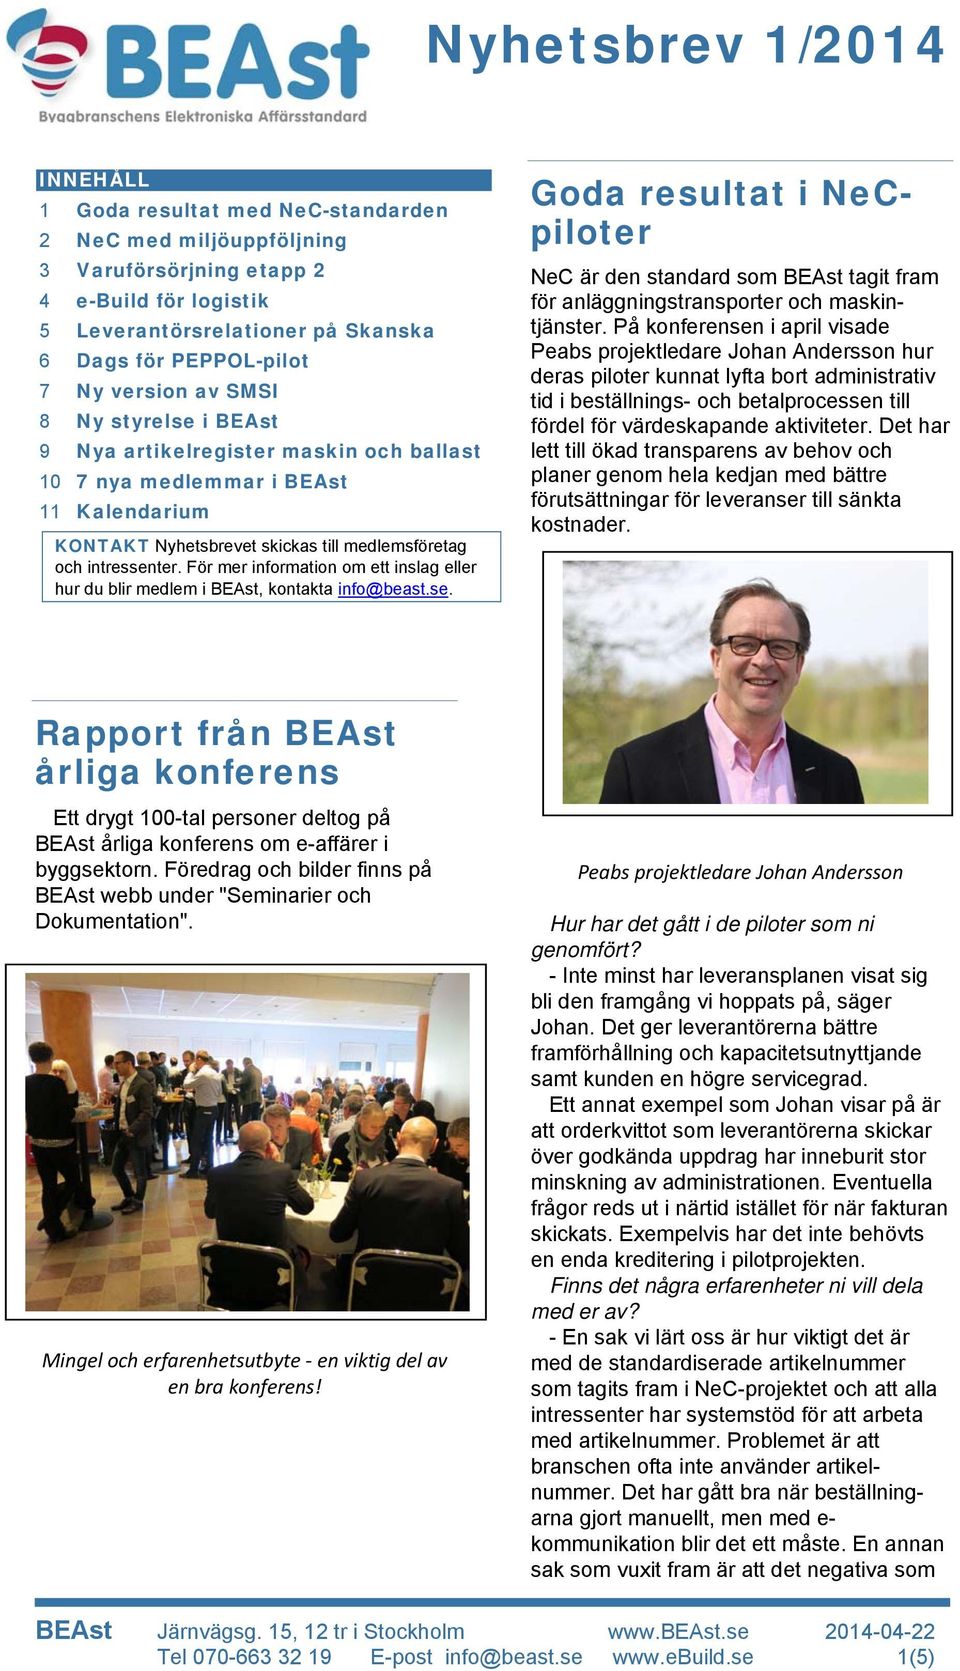 För mer information om ett inslag eller hur du blir medlem i BEAst, kontakta info@beast.se.